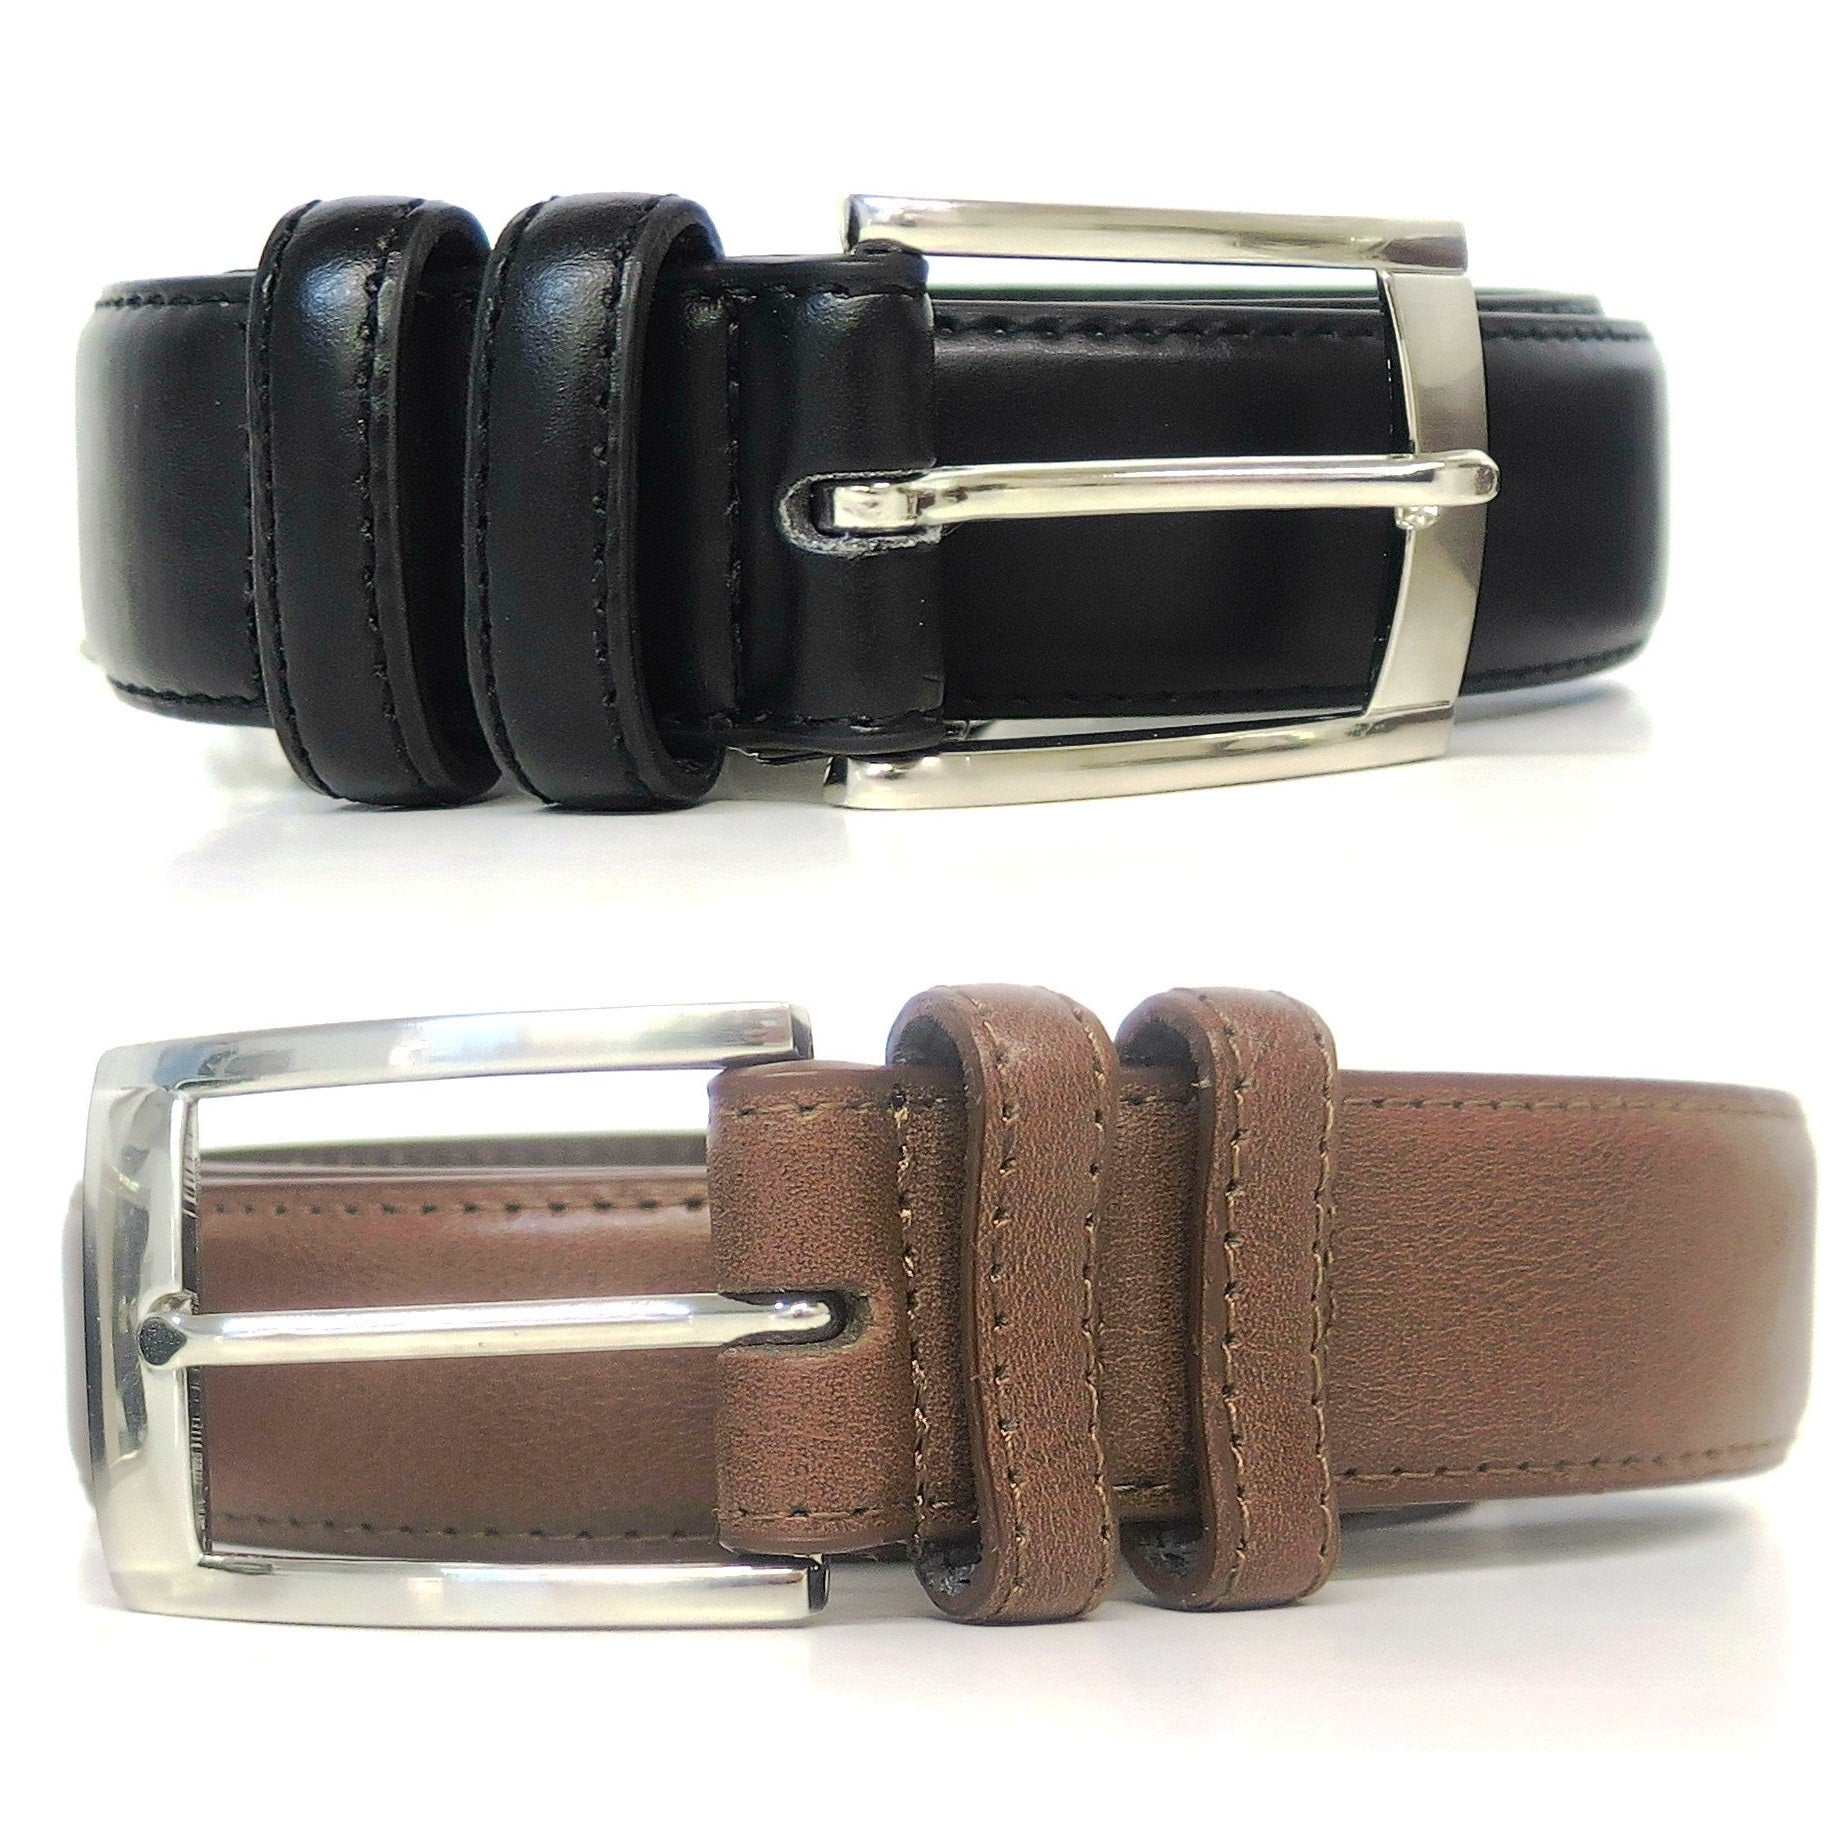 2 Pack Men’s Belts Black & Brown Leather Dress Belts Black Belt & Brown Belt | eBay